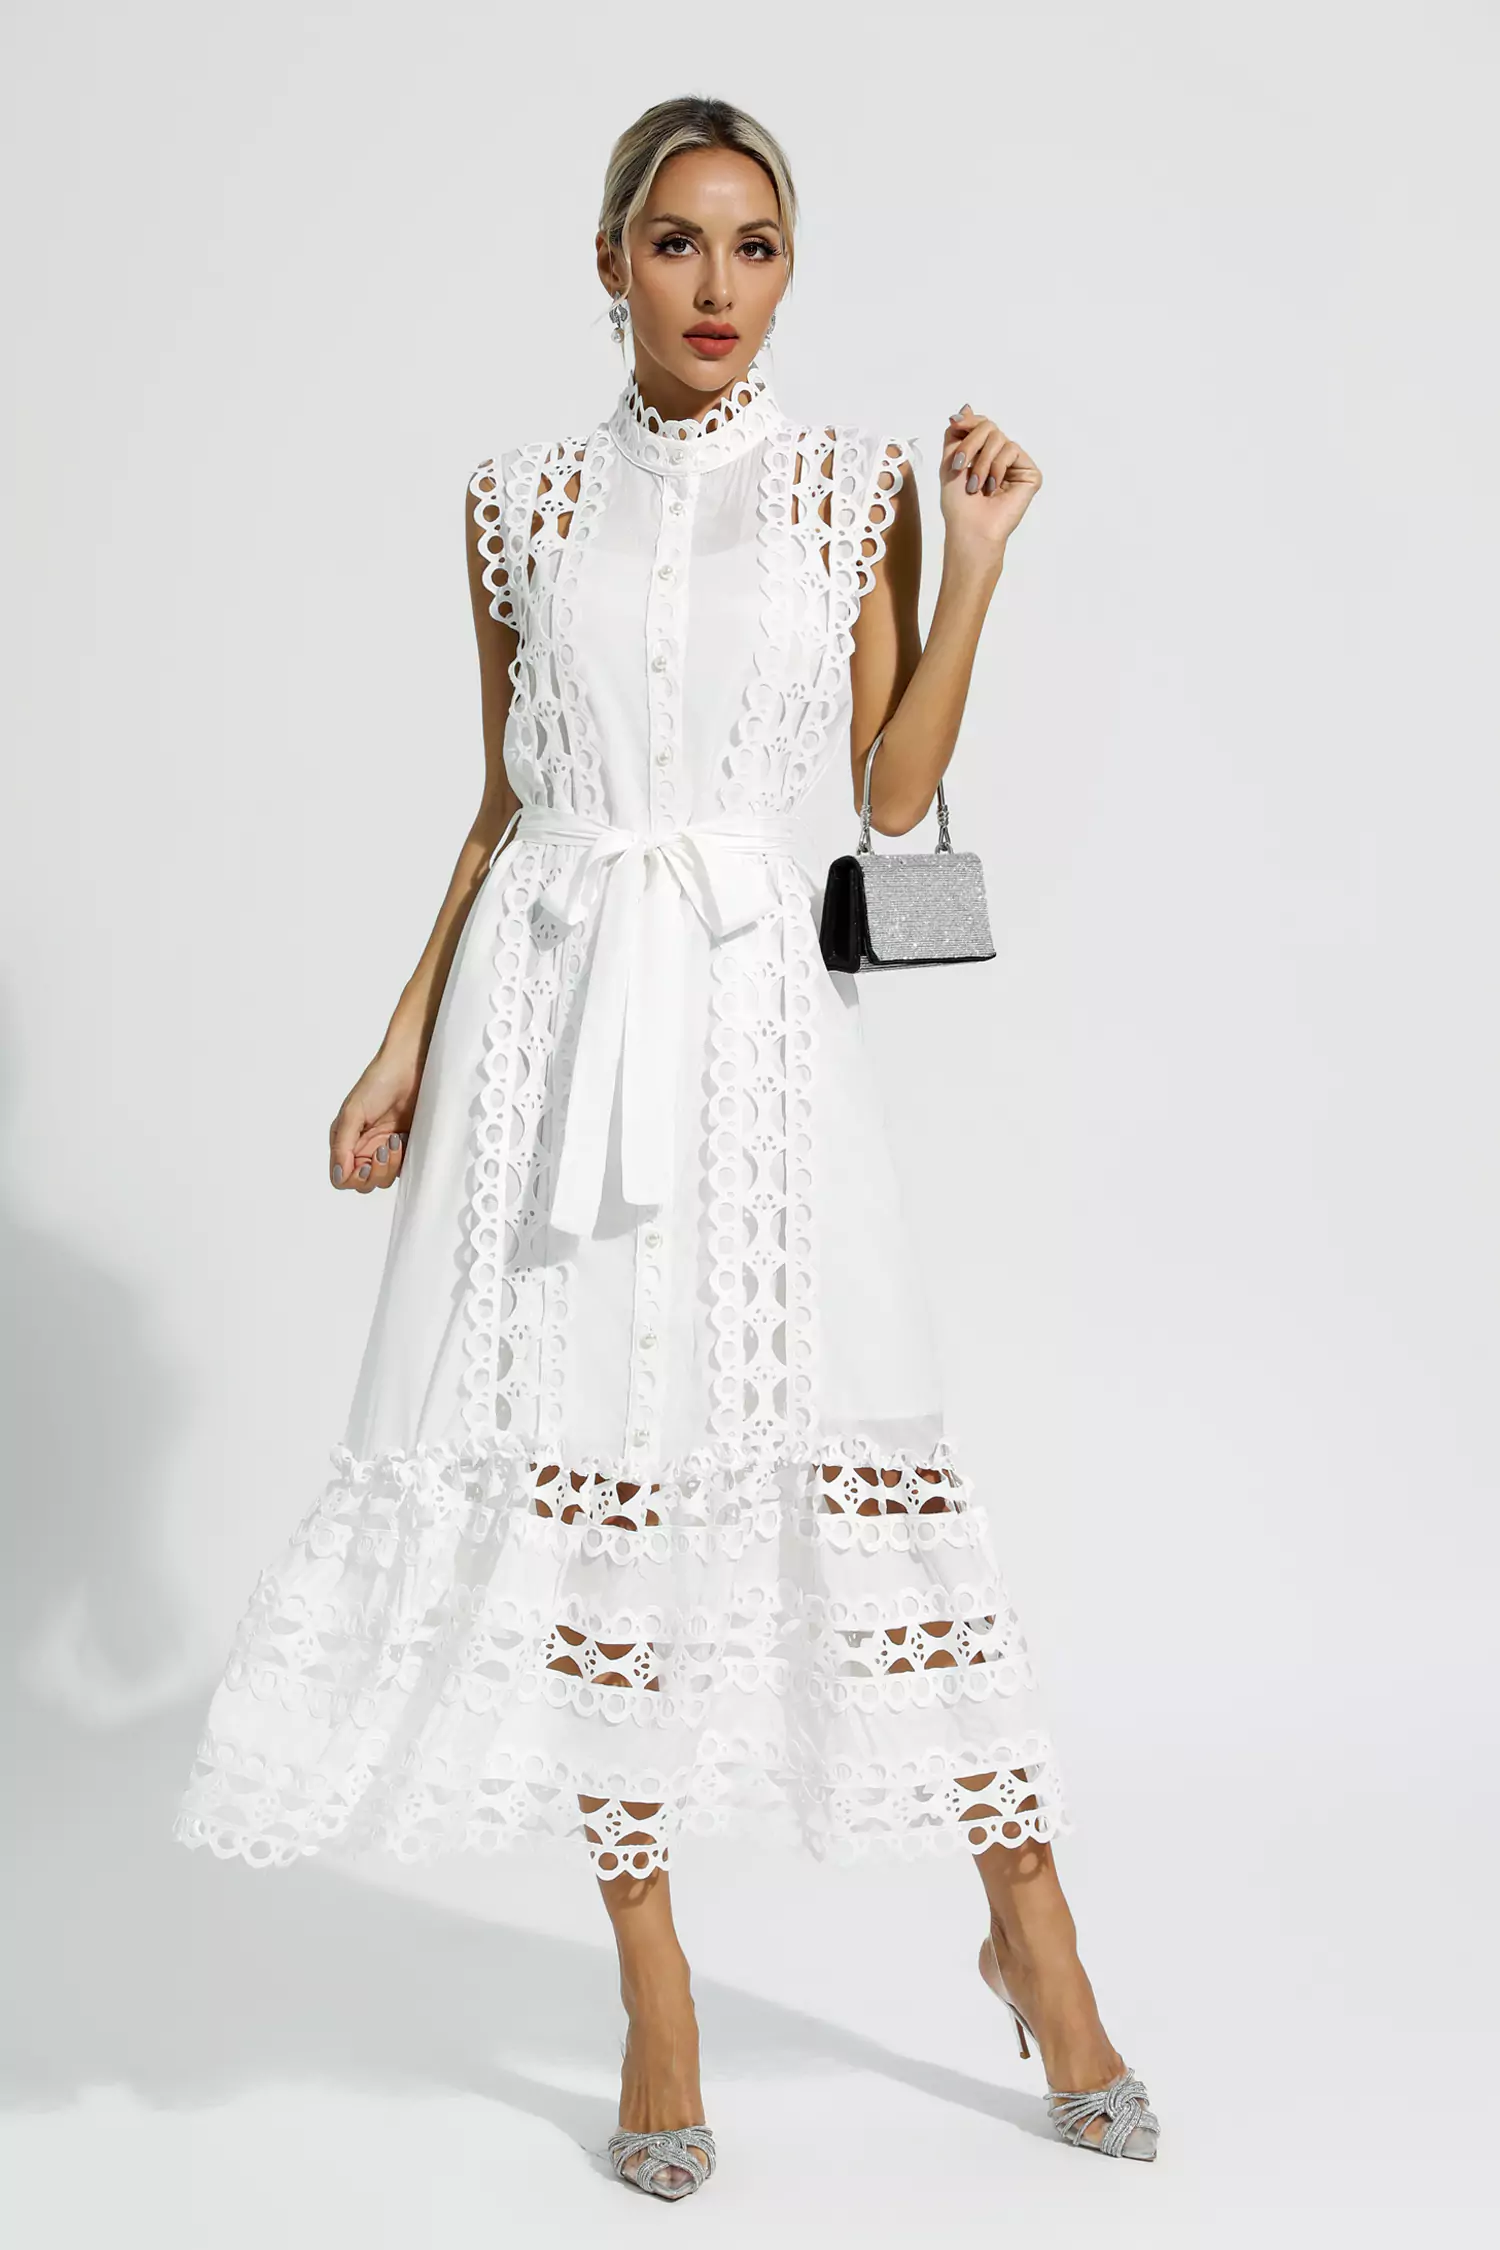 Kennedi White Sleeveless Hollow Maxi Dress